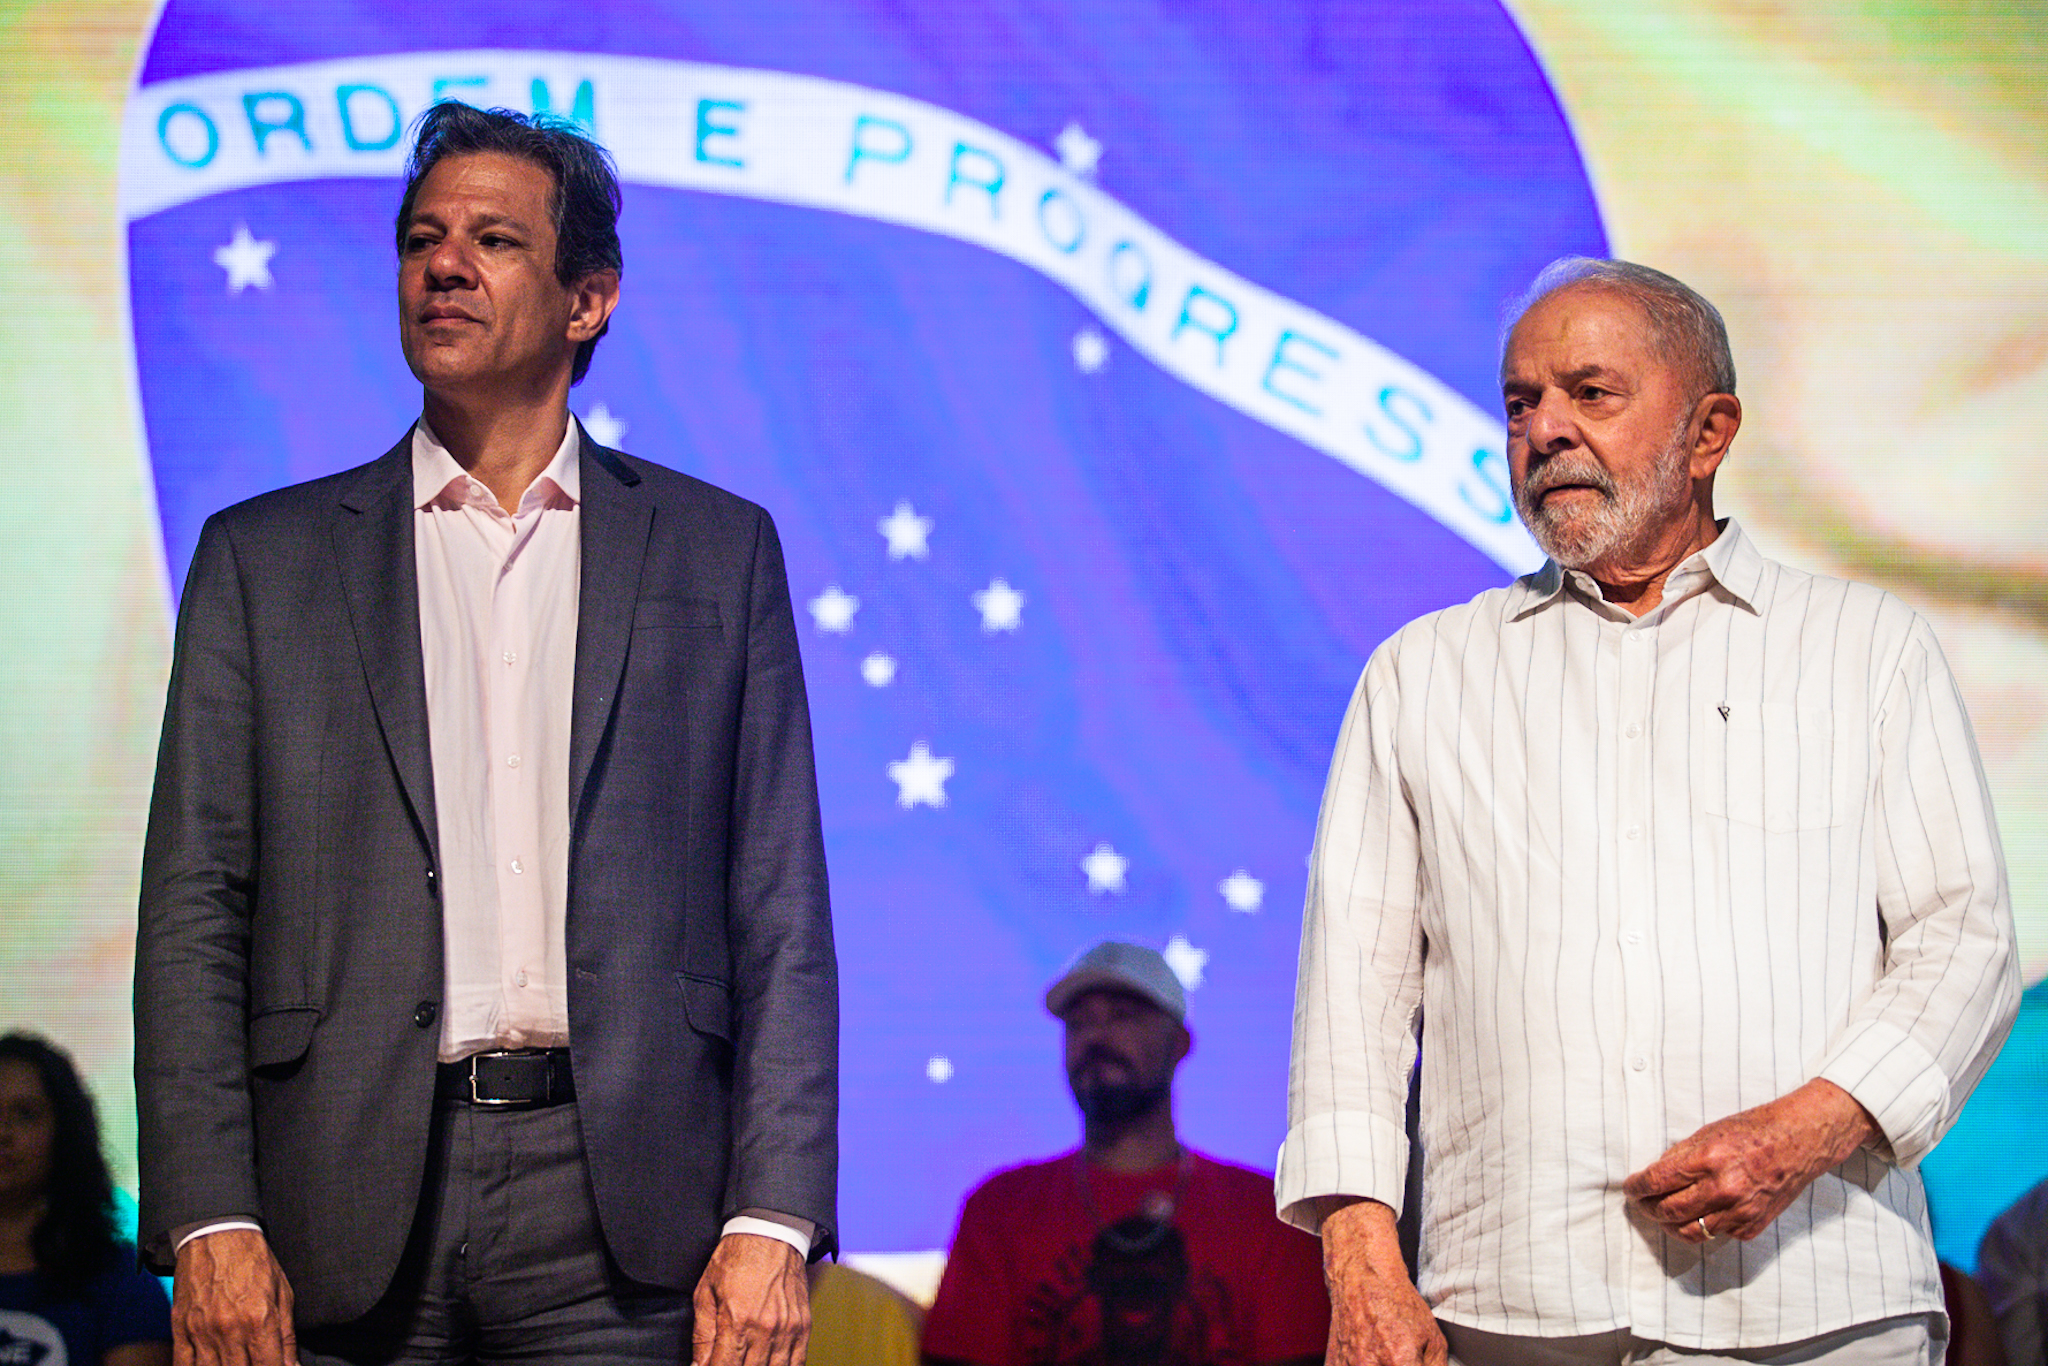 Com Lula, Haddad retorna ao Tuca e reitera: “domingo vamos encerrar uma página nebulosa de SP e do Brasil e começar uma nova com direitos e esperança”